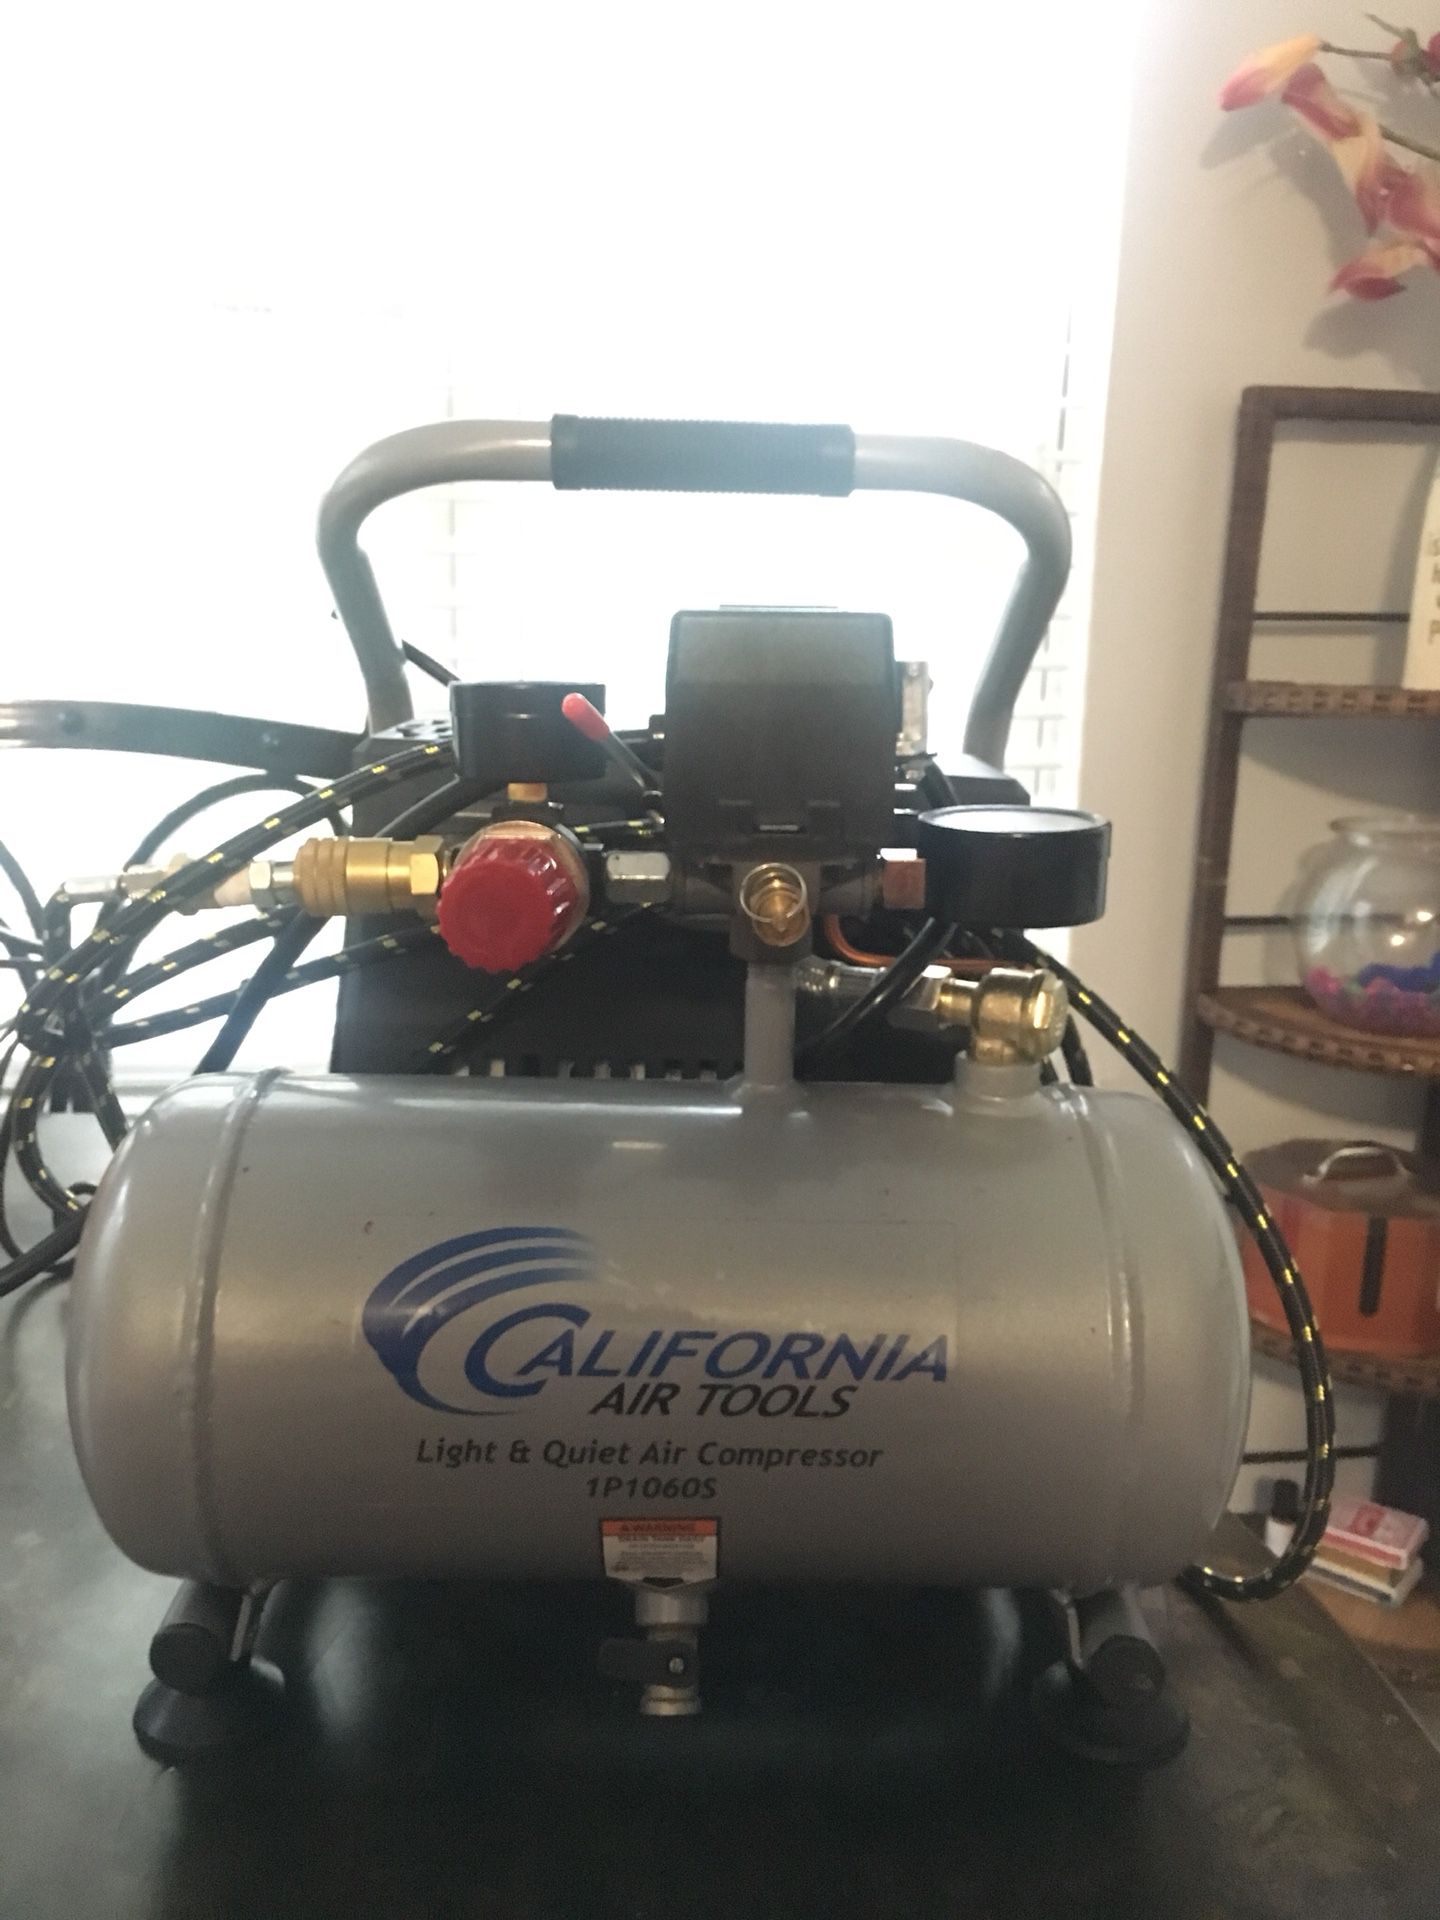 California air tools air compressor